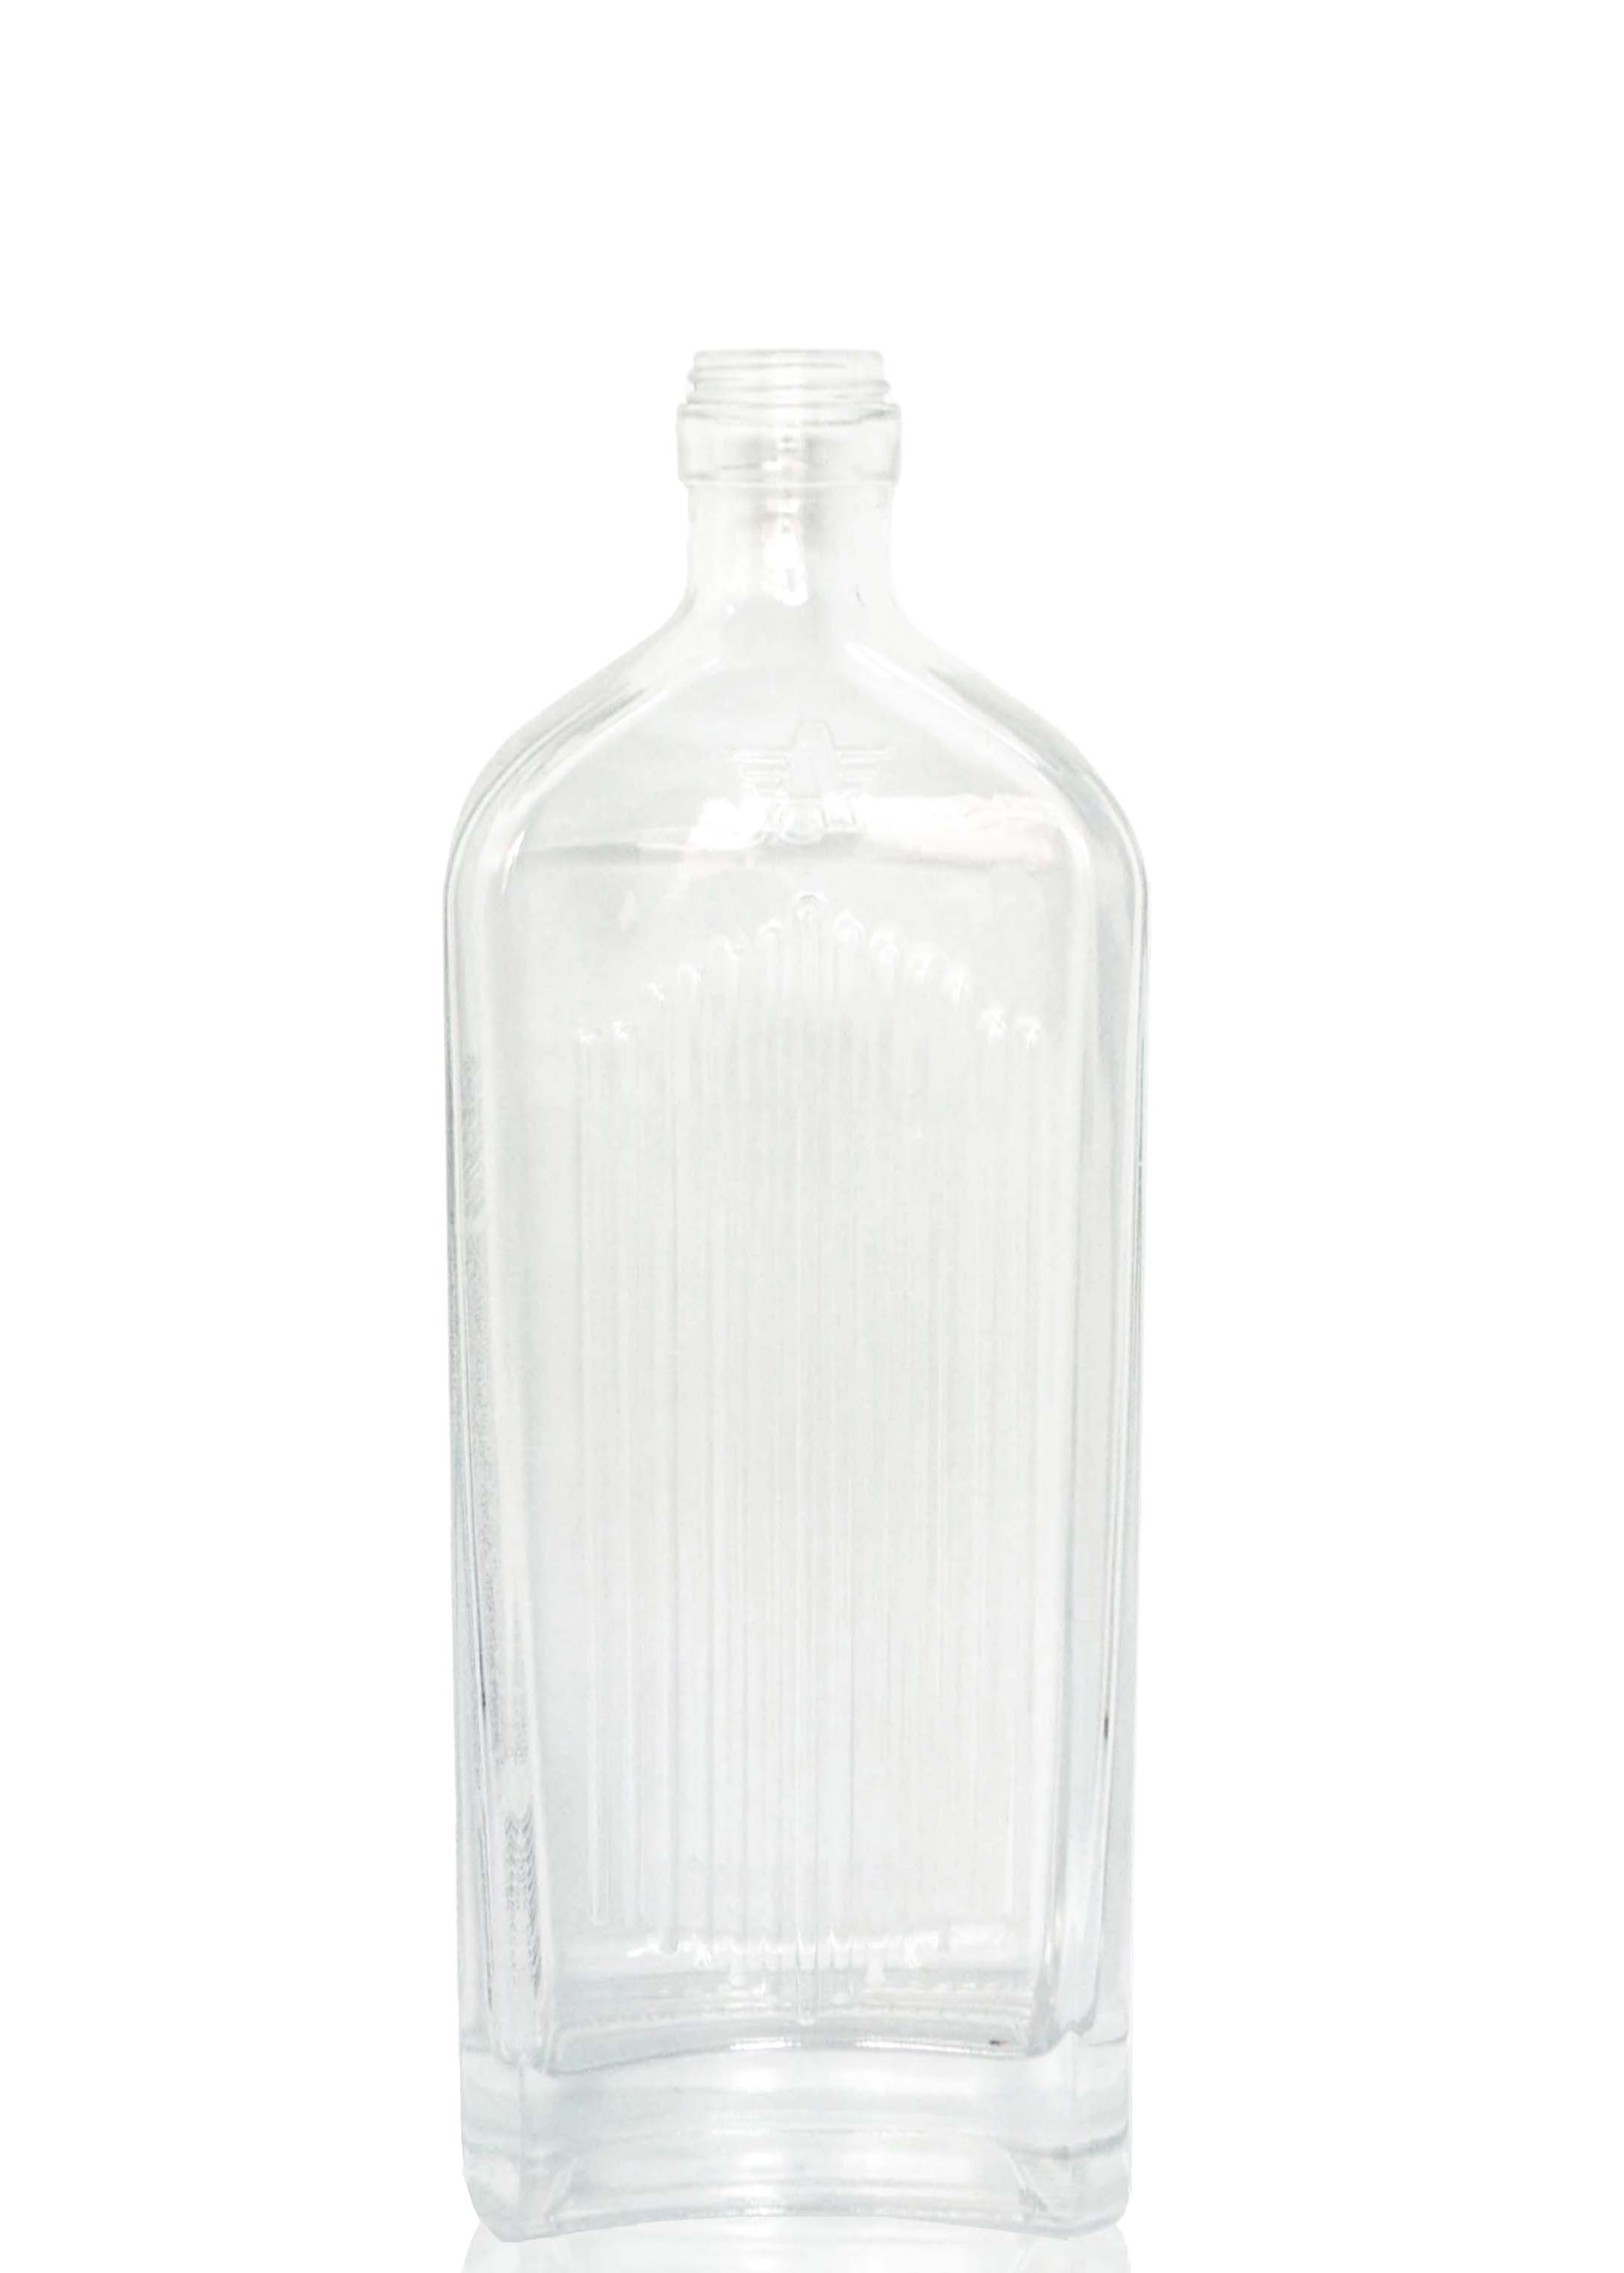 empty glass bottles liquor bottle vodka glass bottle 